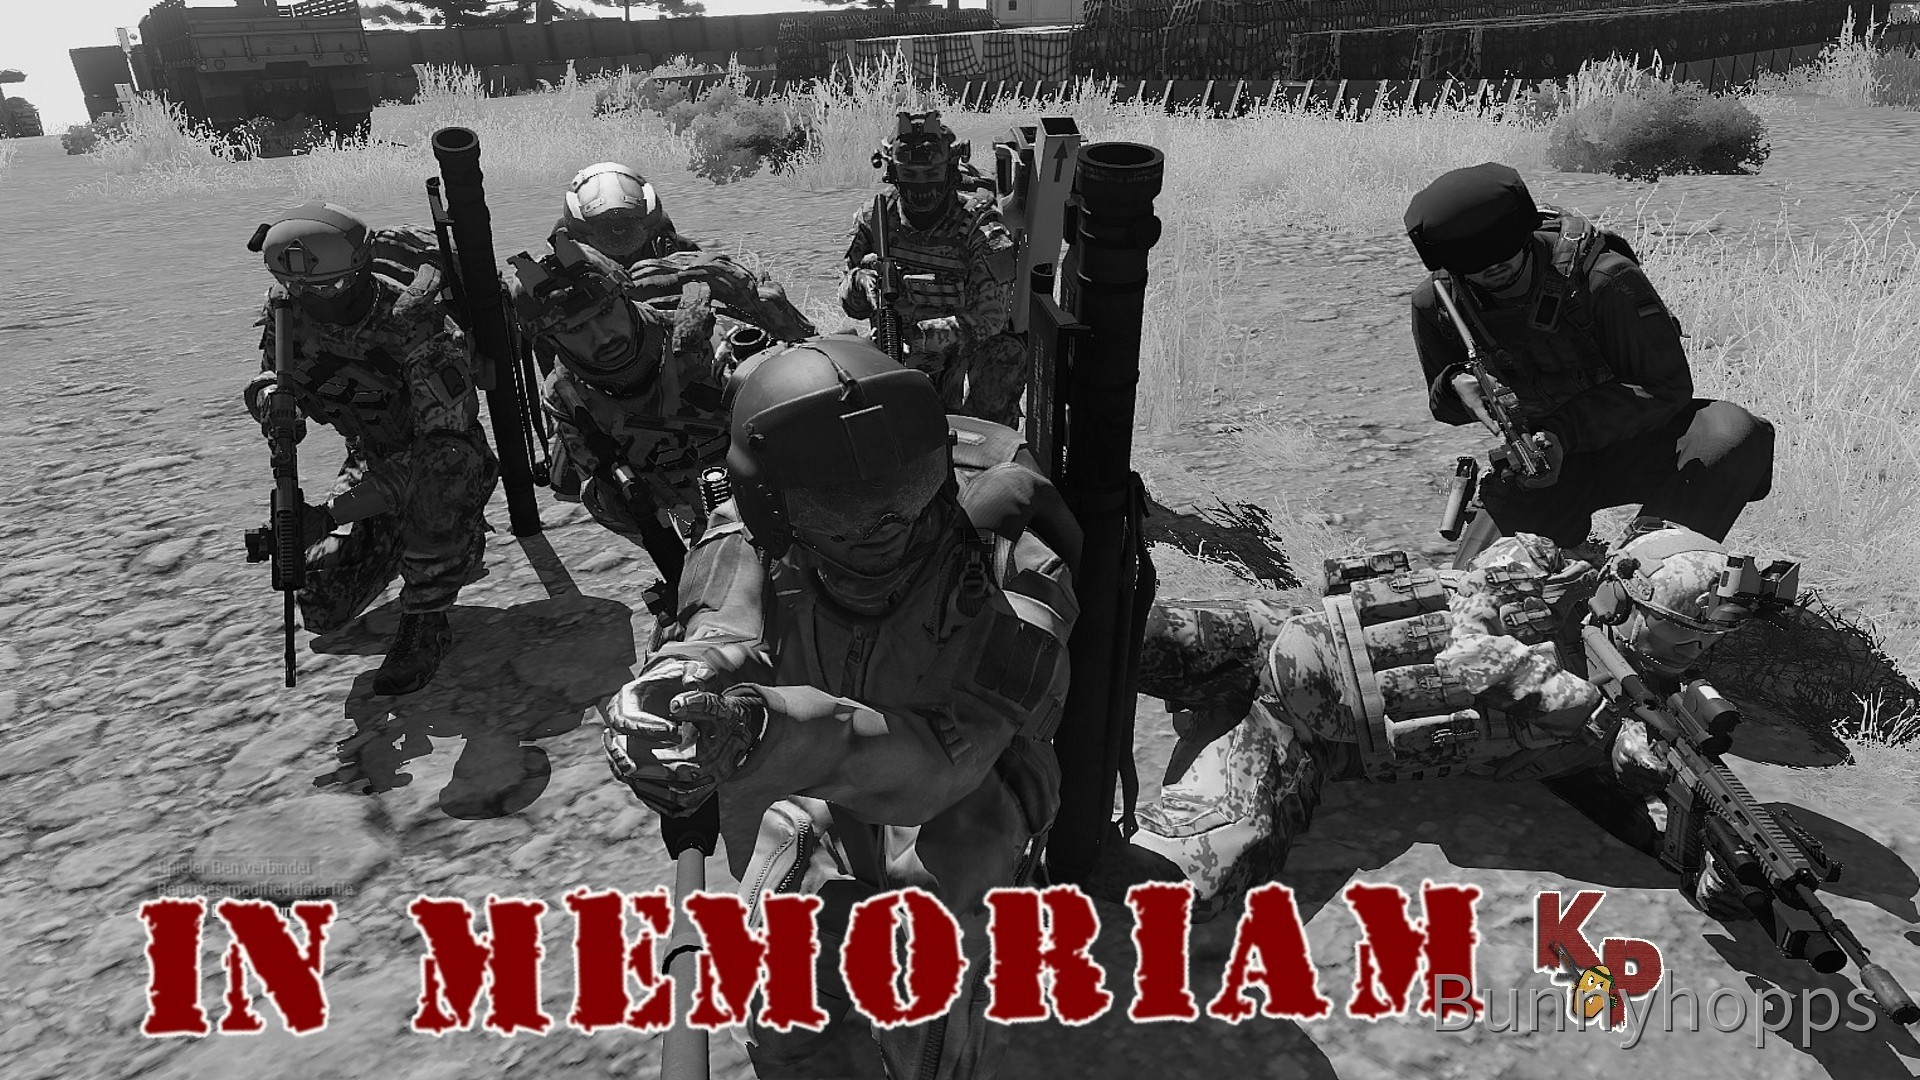 Im Gedenken an unsere tapferen Soldaten